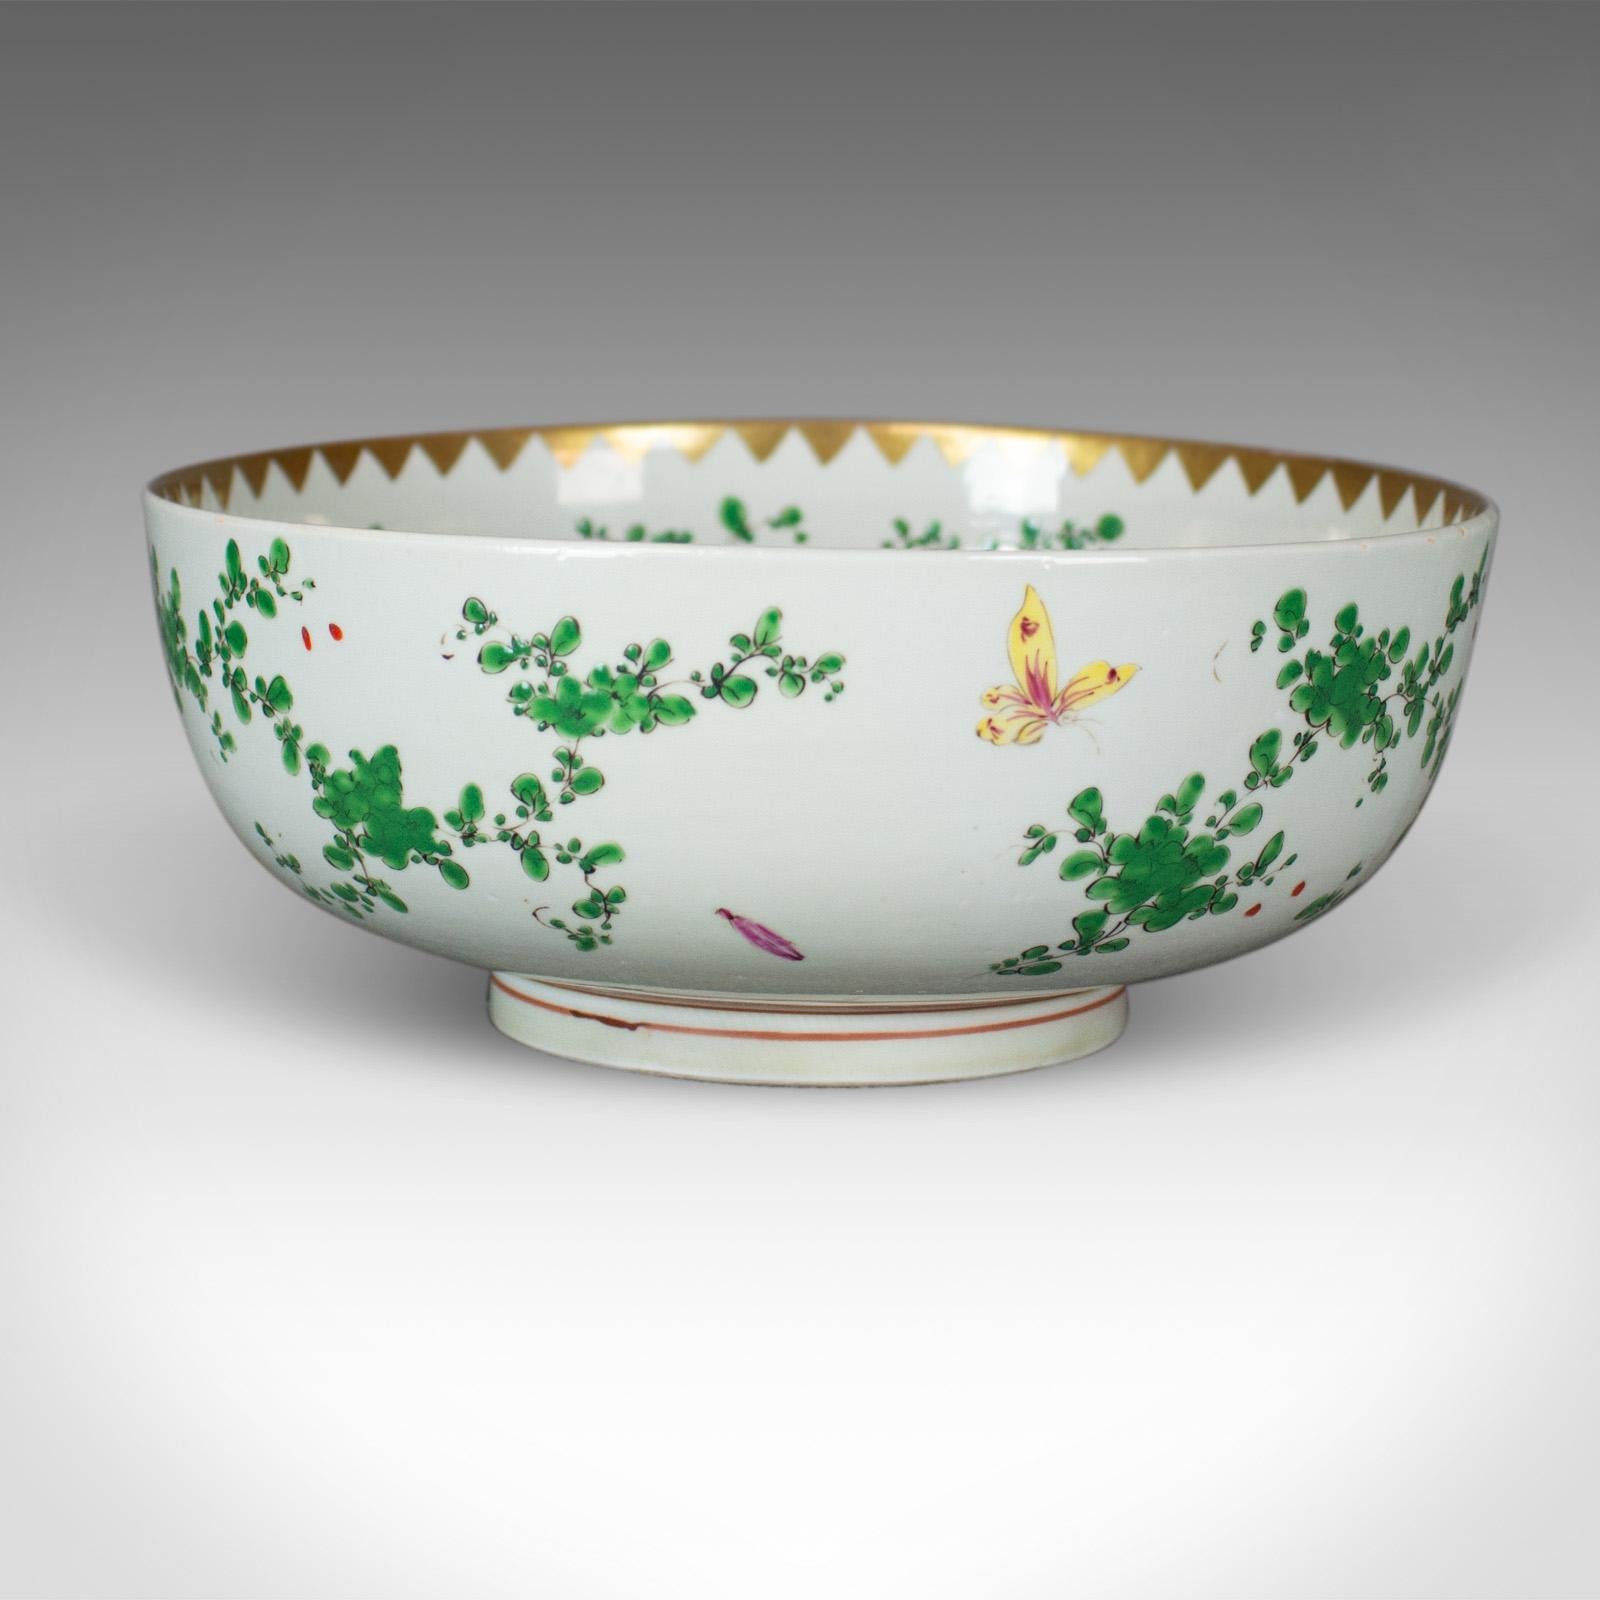 Il s'agit d'un grand bol à litchi en porcelaine chinoise dans des tons naturels sur fond blanc datant de la fin du 20e siècle.

Un joli bol en bon état dans son ensemble
Peint avec des oiseaux exotiques, des papillons et du feuillage sur un fond